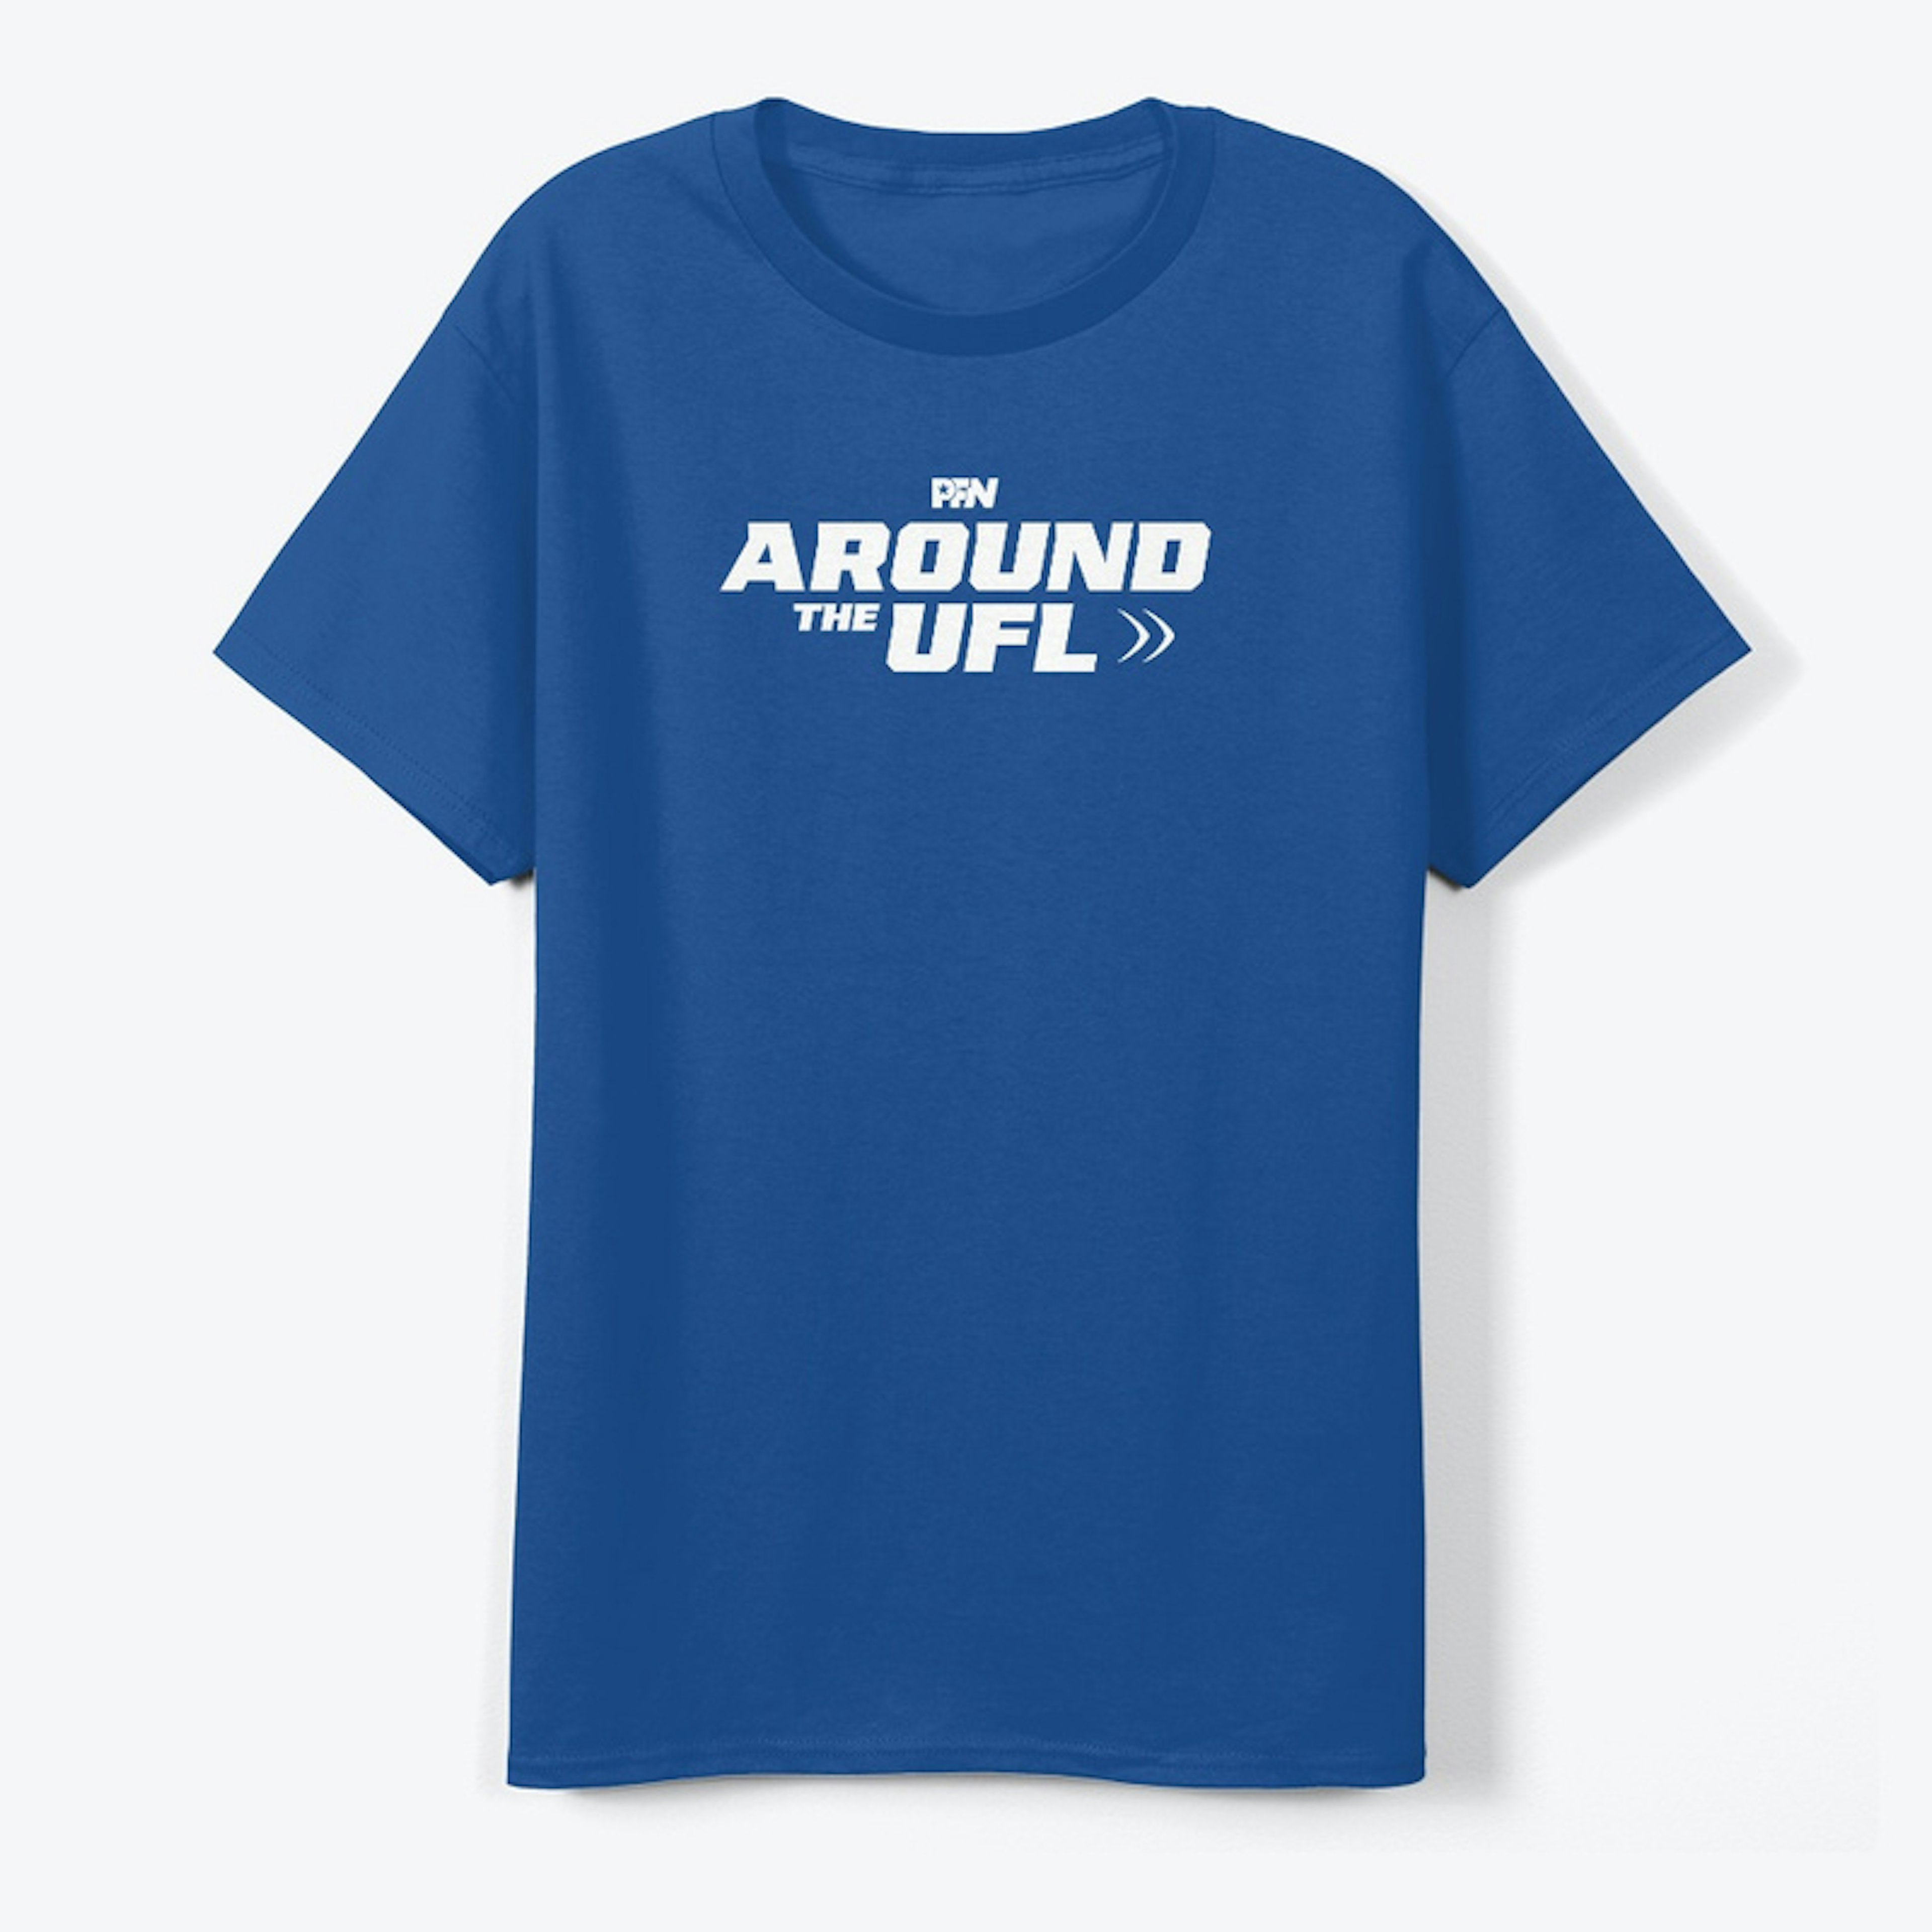 Around The UFL T-Shirt